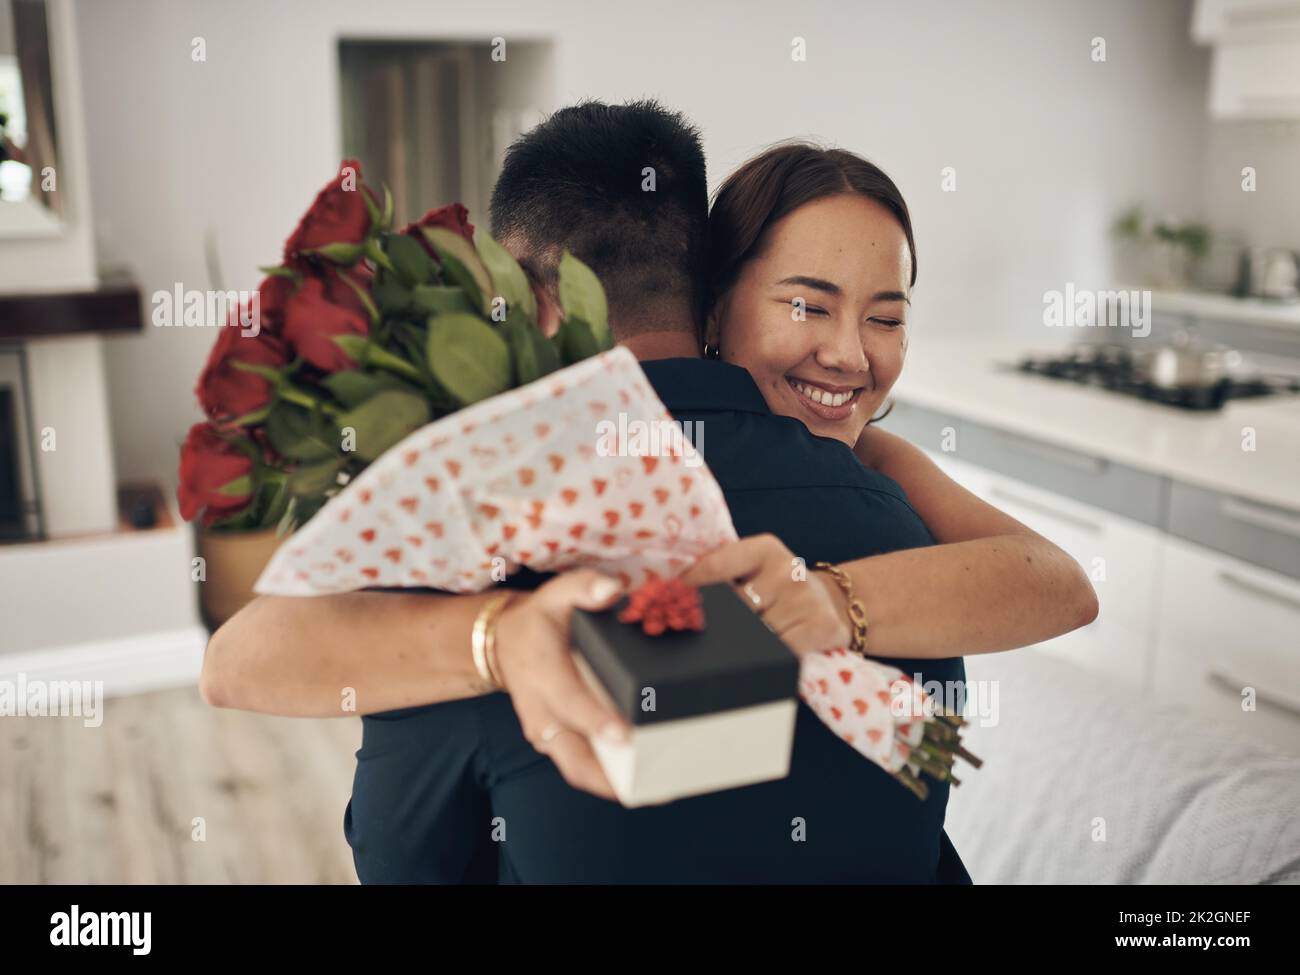 Zufällige Handlungen der Freundlichkeit. Aufnahme eines jungen Mannes, der seine Frau zu Hause mit Blumen überraschte. Stockfoto